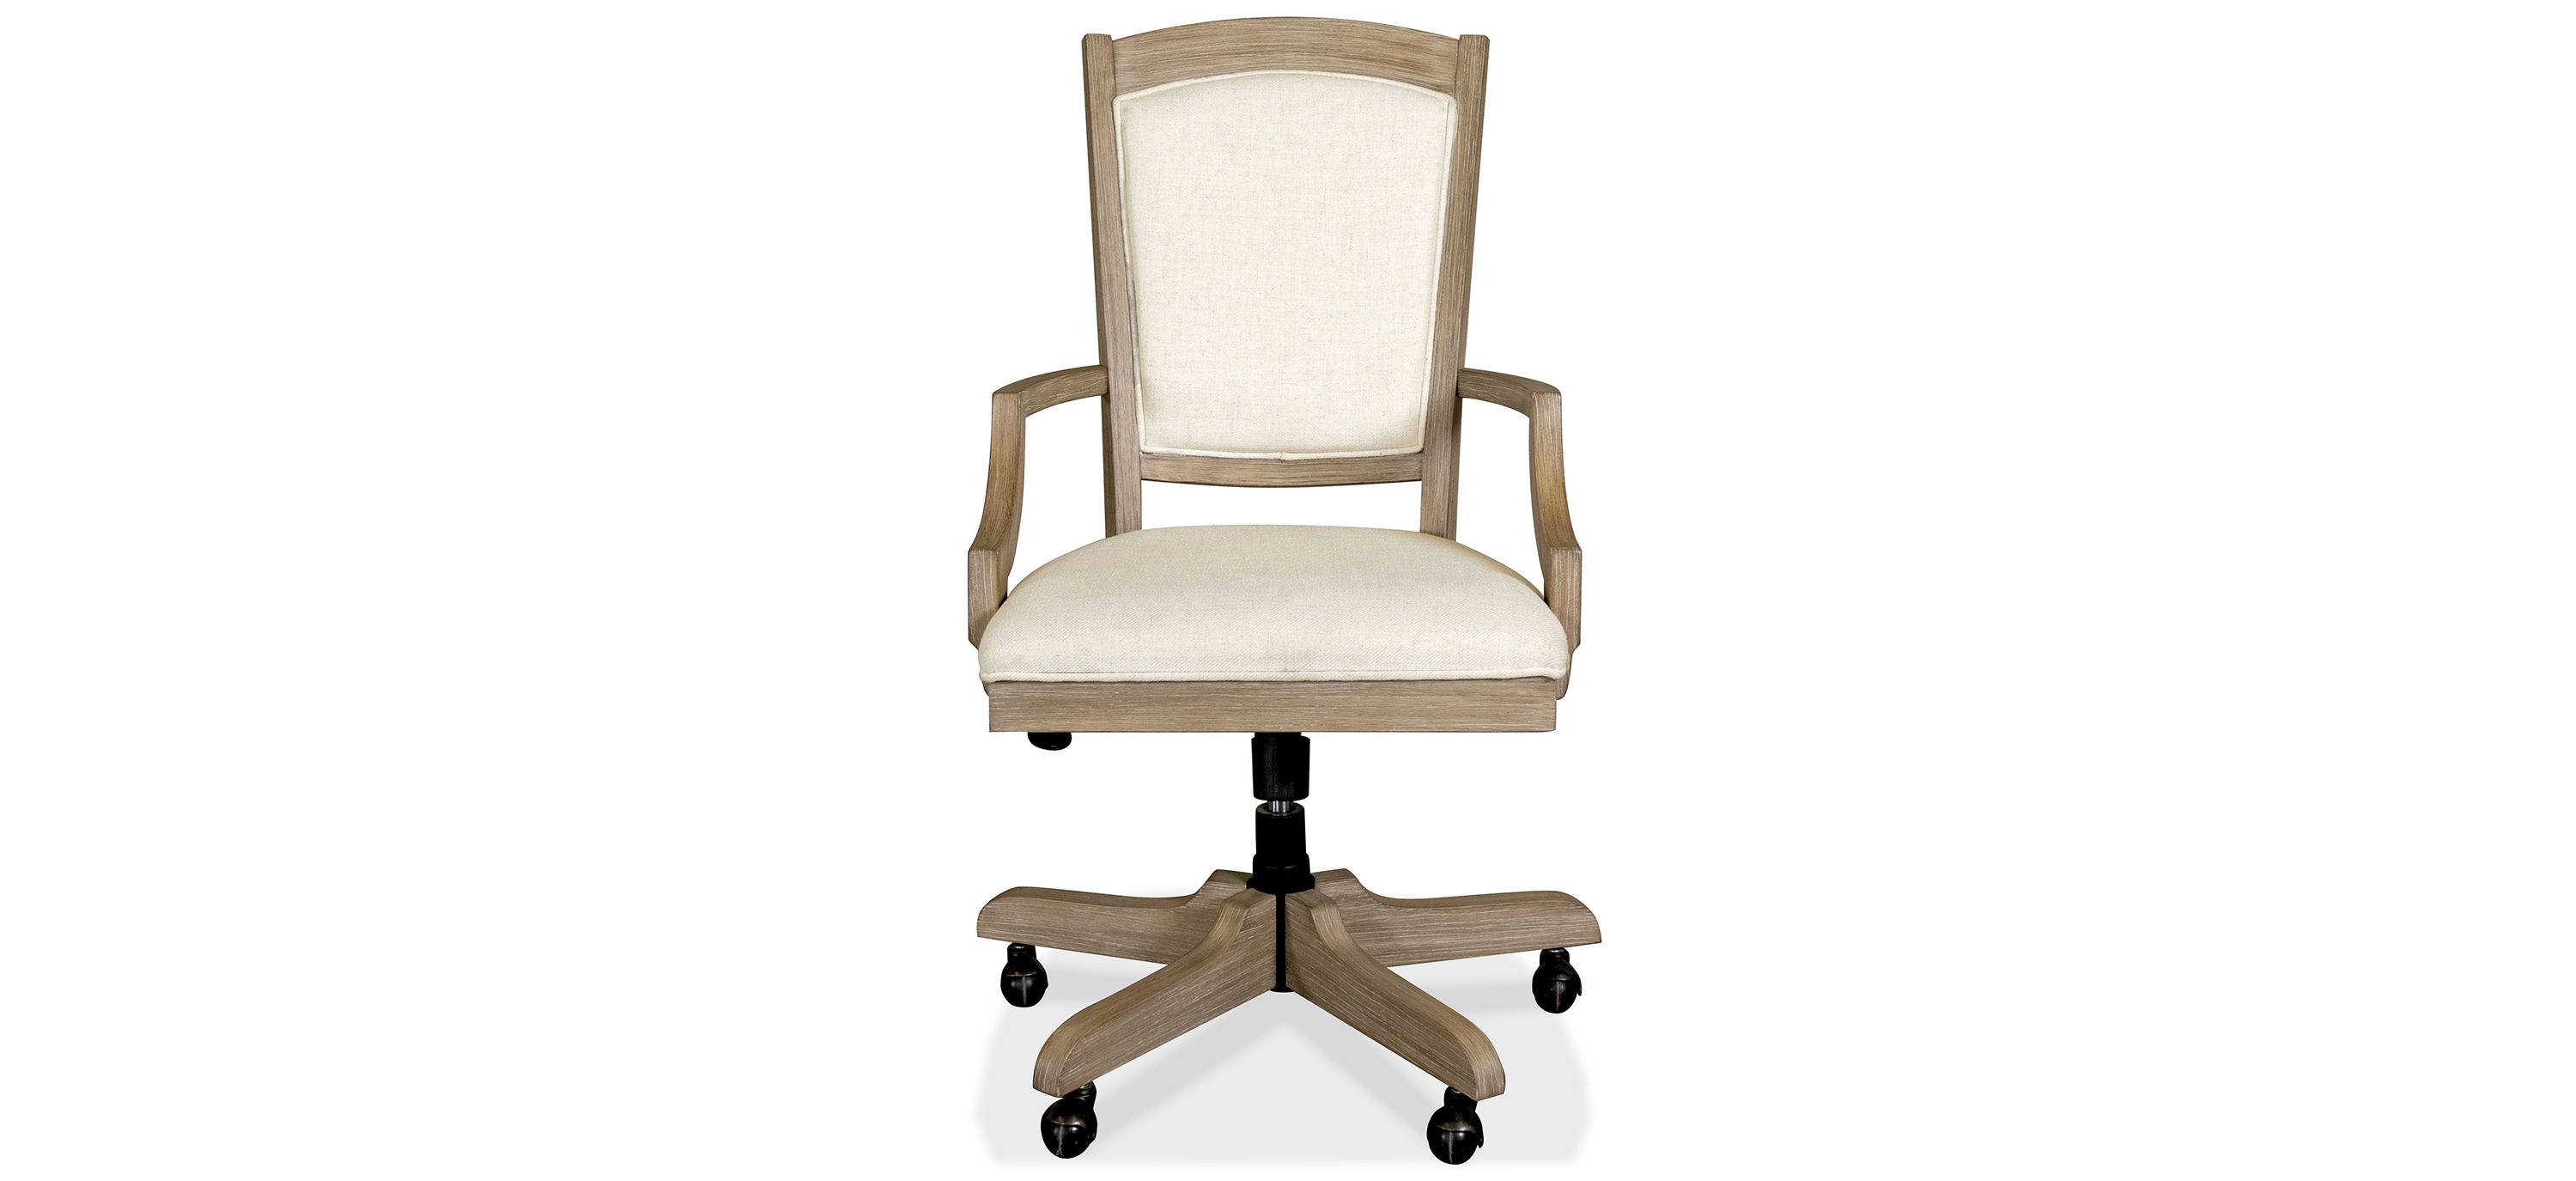 Sandstone Upholstered Desk Chair